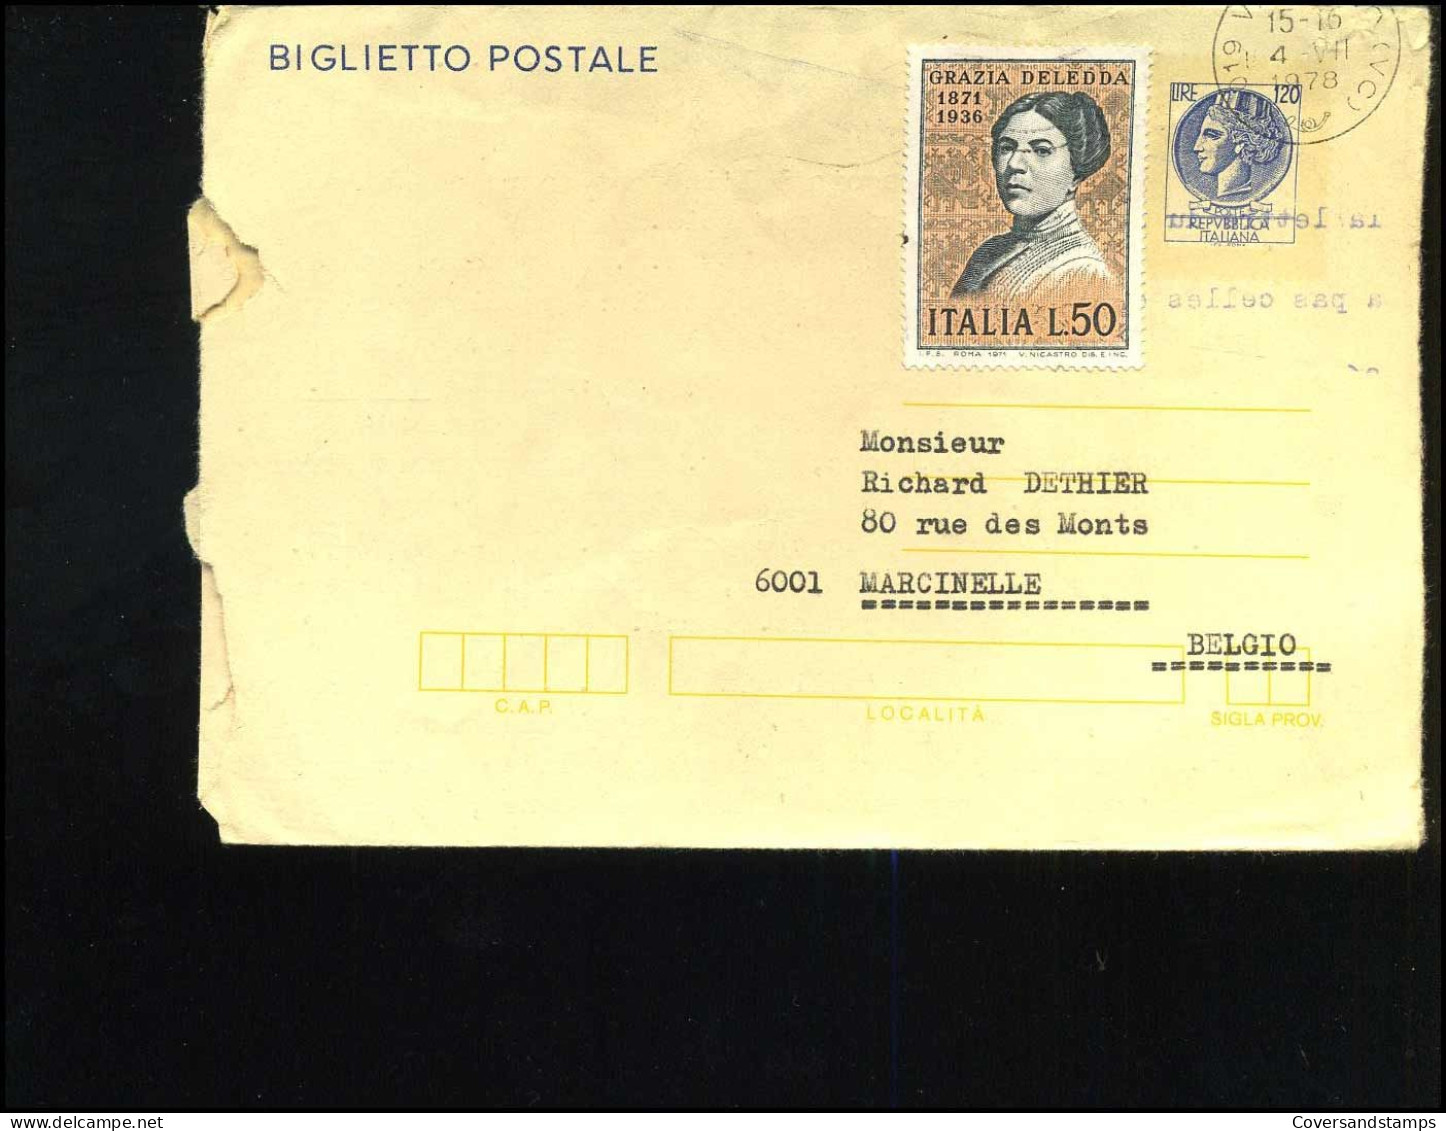 Biglietto Postale To Marcinelle, Belgium - Stamped Stationery